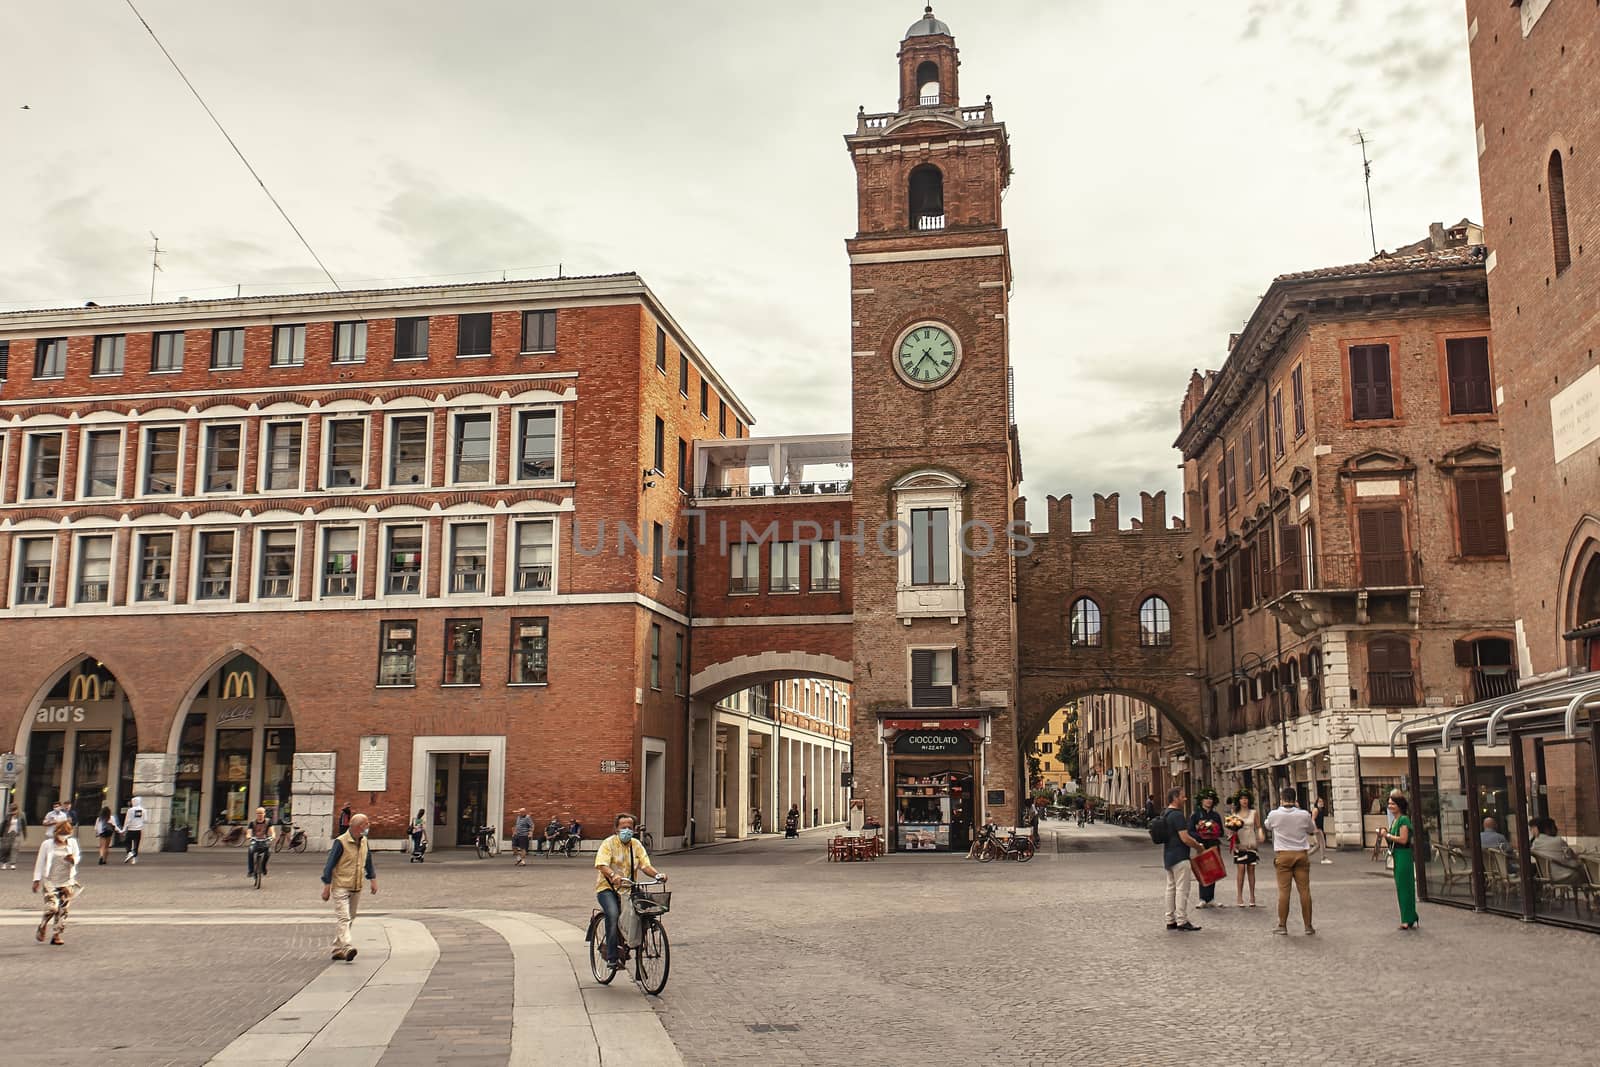 Piazza del Municipio in Ferrara with clock tower by pippocarlot